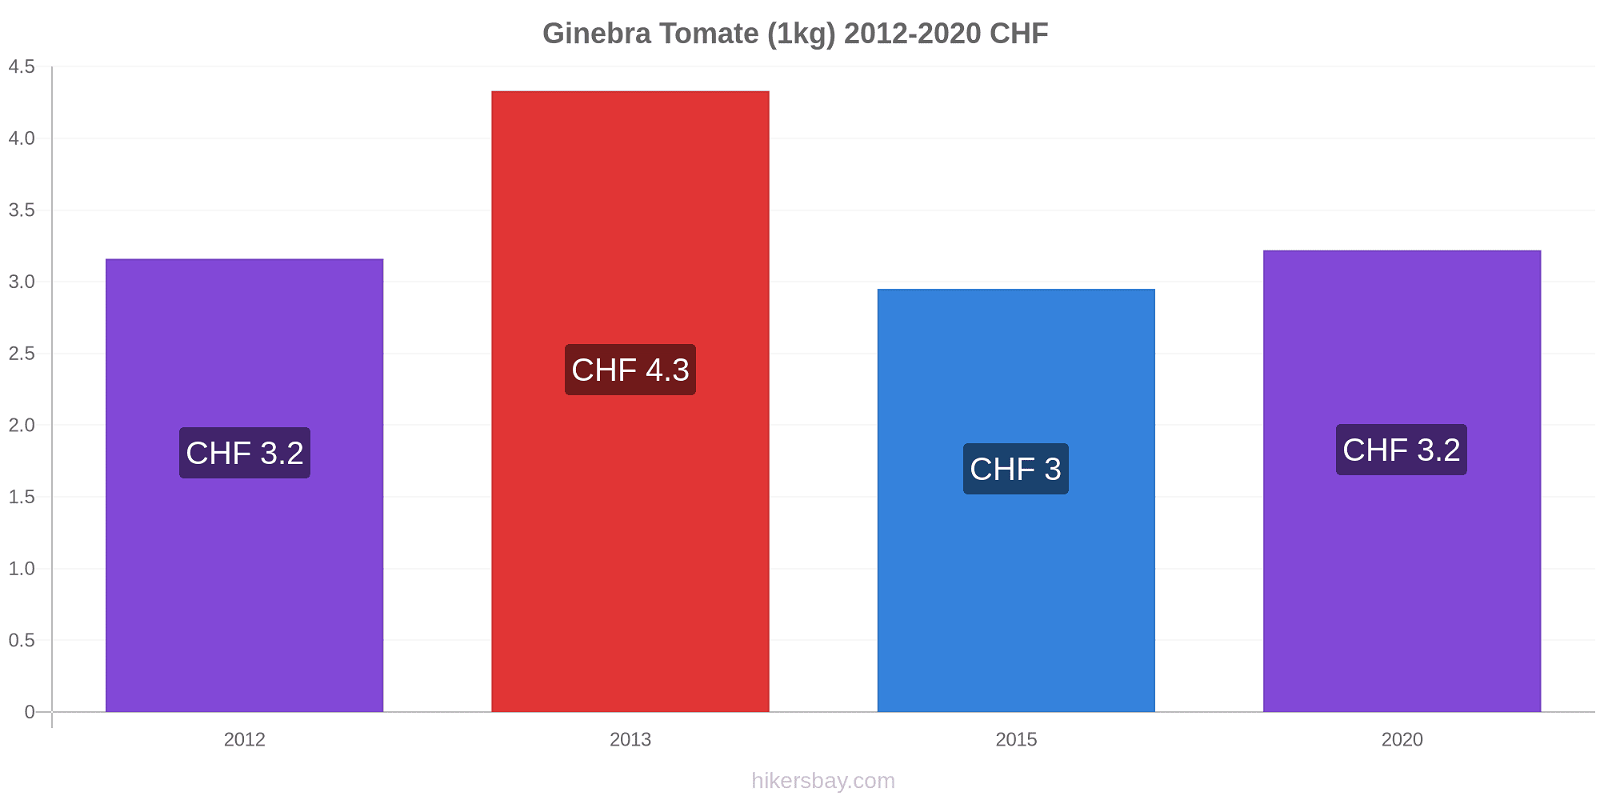 Ginebra cambios de precios Tomate (1kg) hikersbay.com